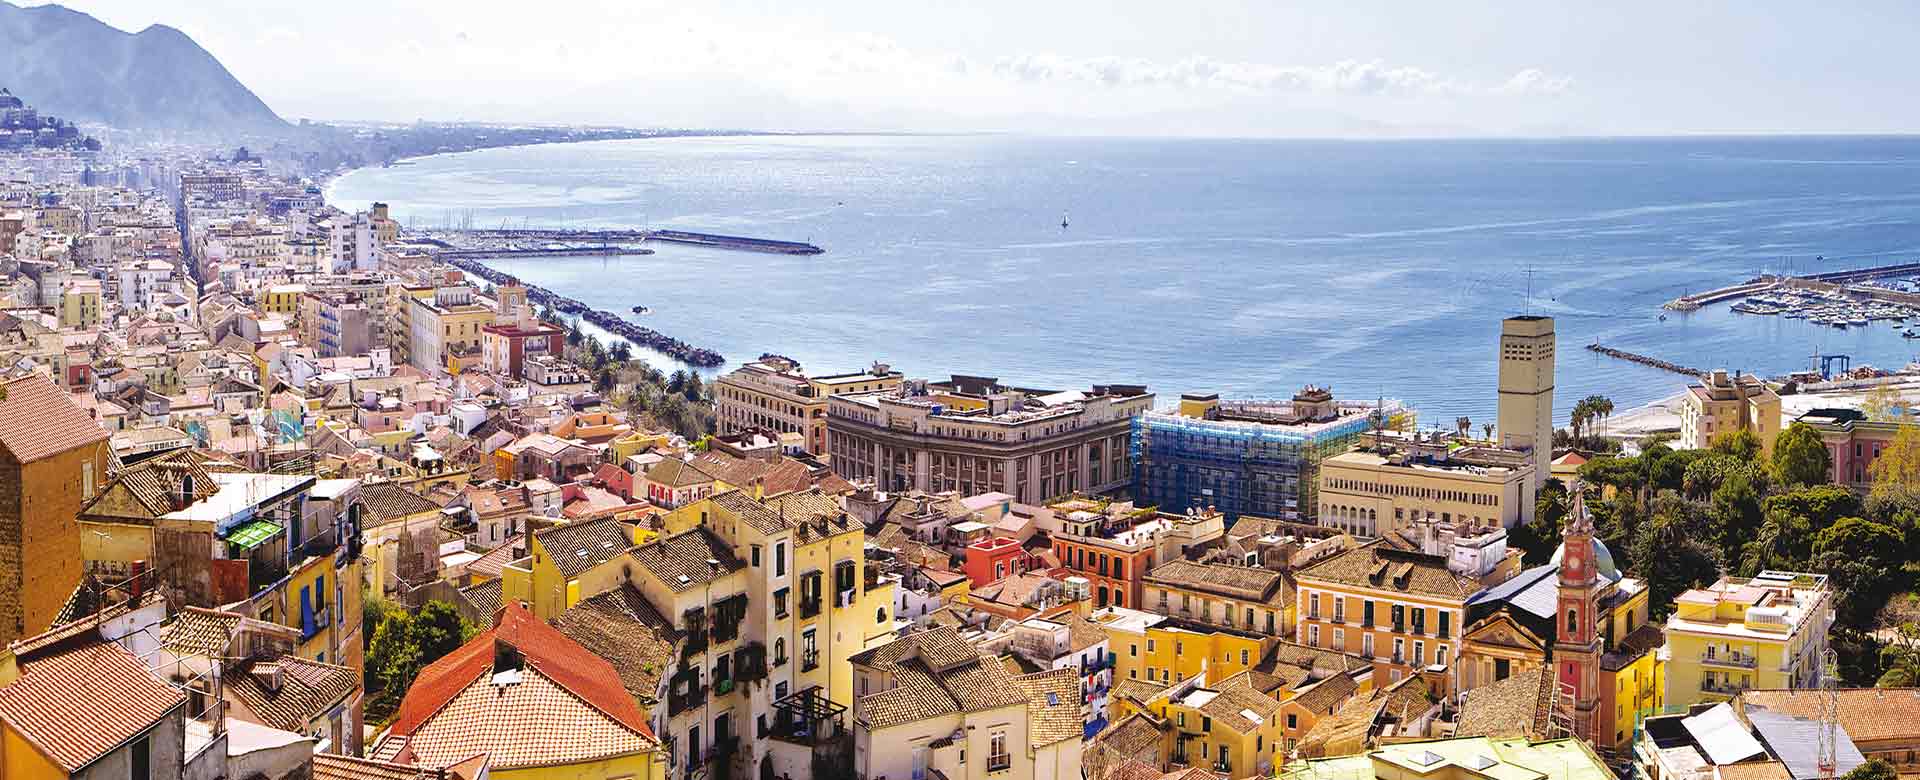 Immagine della città di Salerno